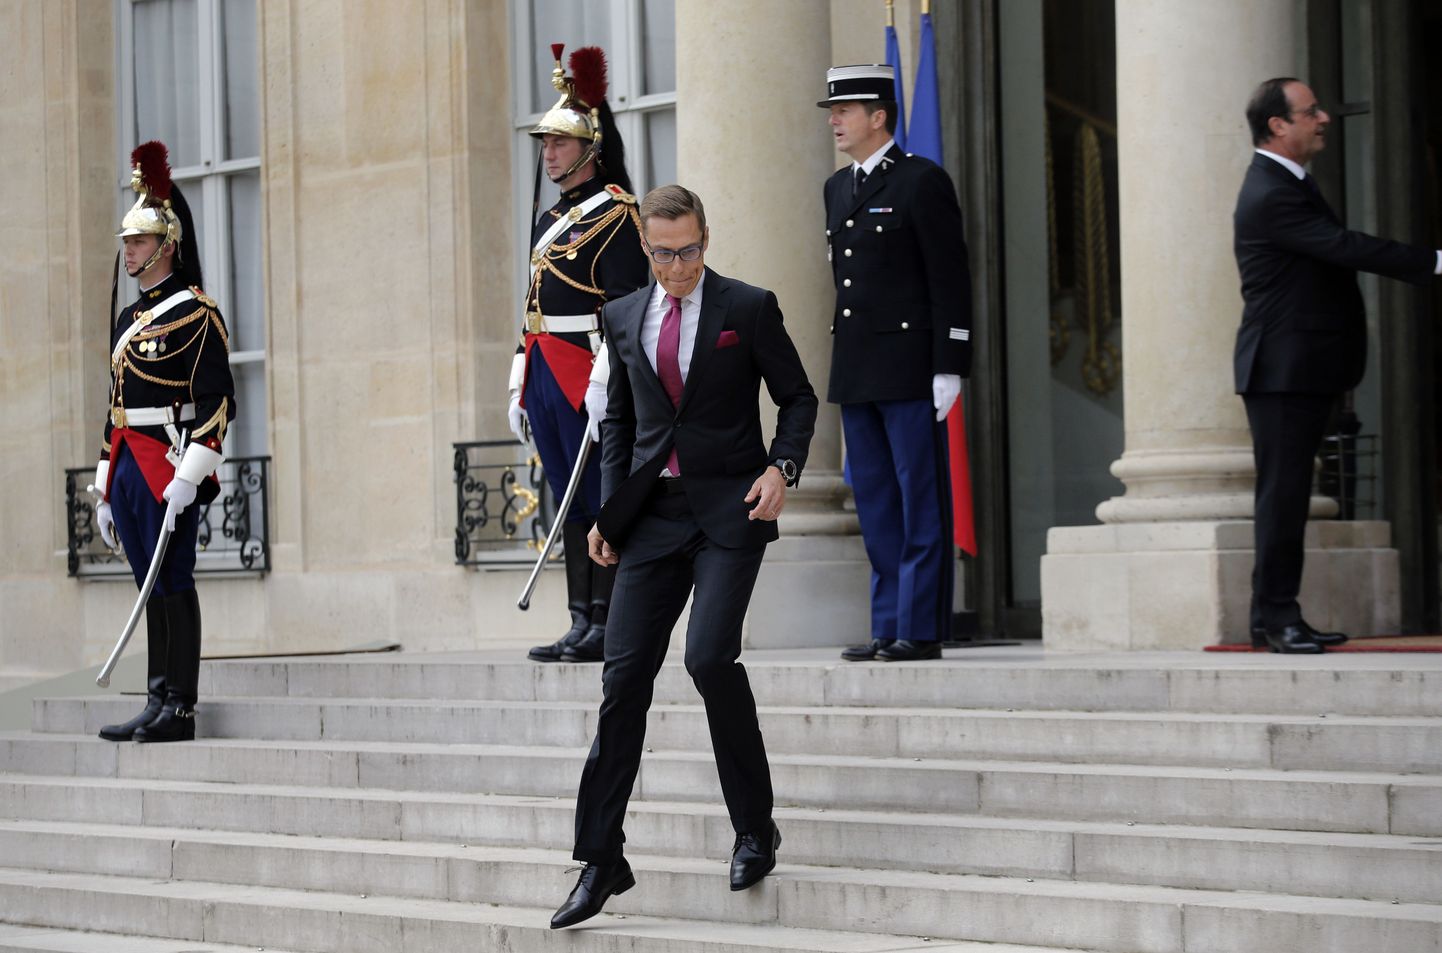 Soome peaminister Alexander Stubb lahkumas Elysee paleest, kus ta 2. oktoobrl kohtus Prantsusmaa presidendi François Hollande'iga.